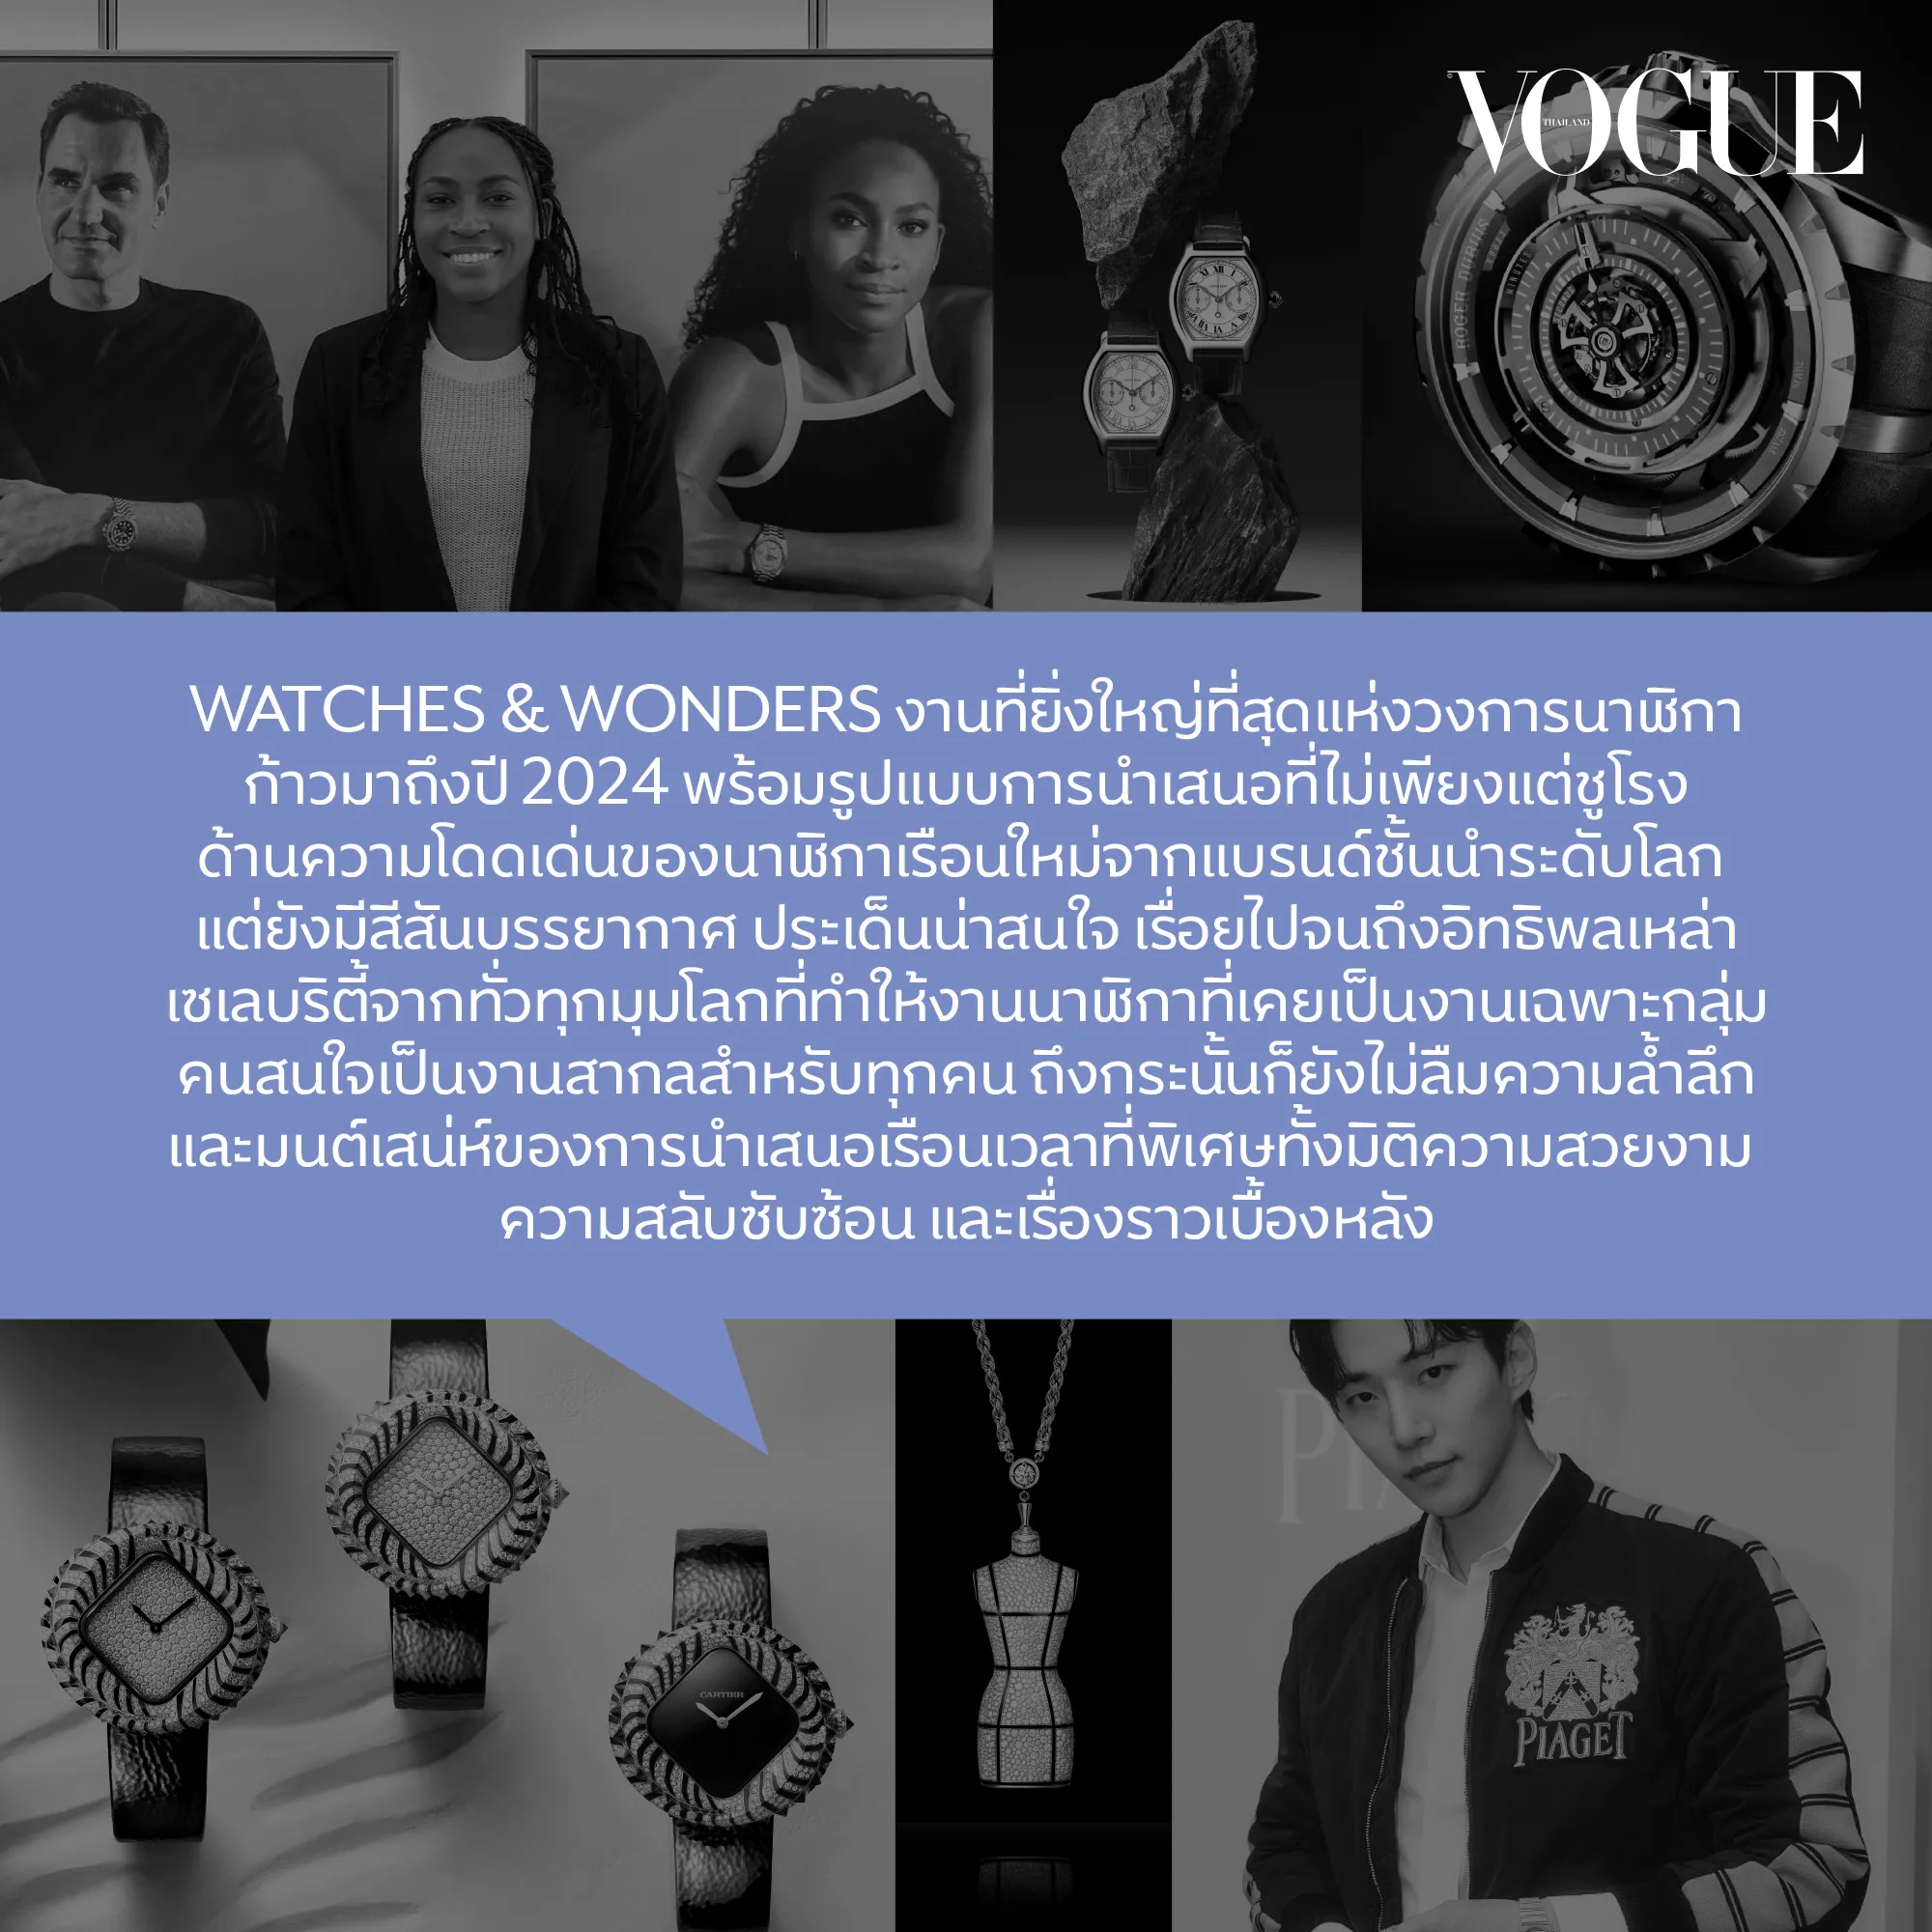 Watches & Wonders, #VogueScoop, Vogue Scoop, Watches & Wonders 2024, Watches and Wonders, Watches and Wonders 2024